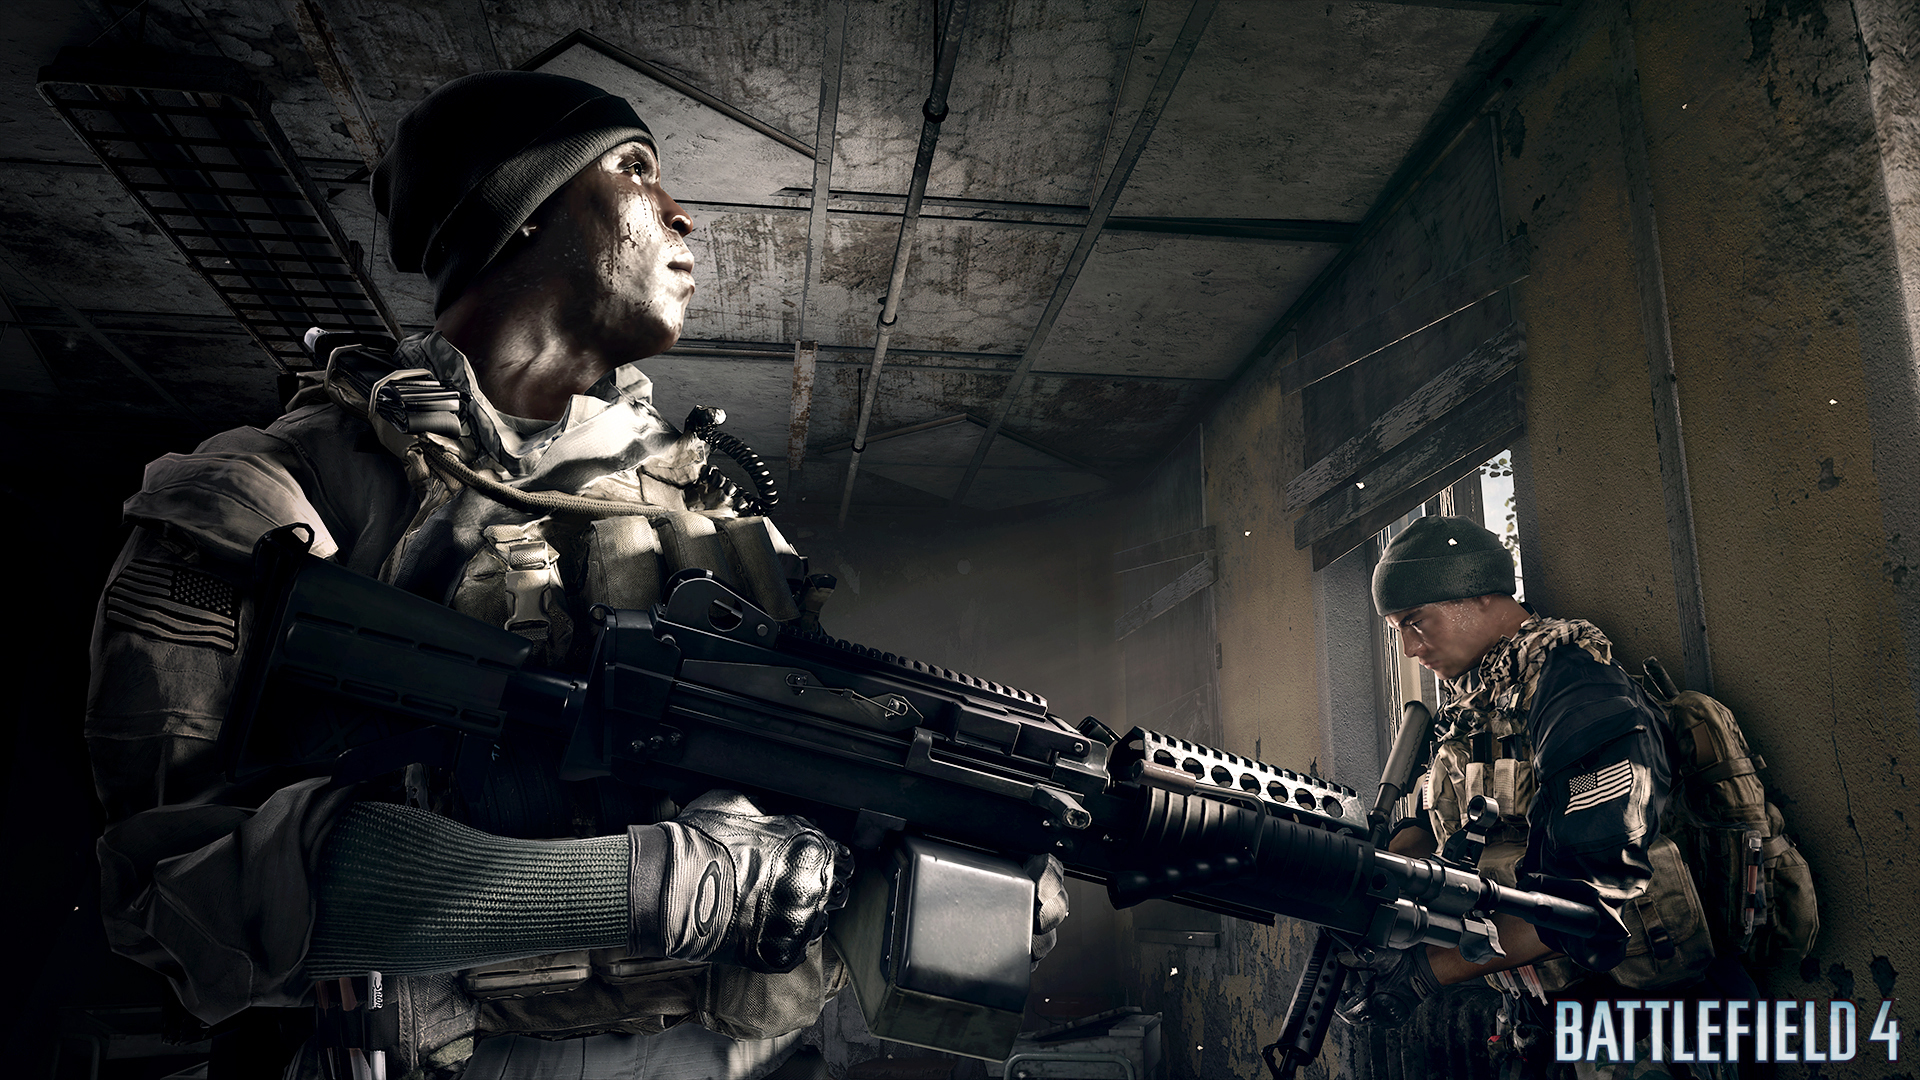 Immagine pubblicata in relazione al seguente contenuto: EA e DICE pubblicano i primi screenshot dello shooter Battlefield 4 | Nome immagine: news19227_Battlefield-4-screenshot_1.jpg